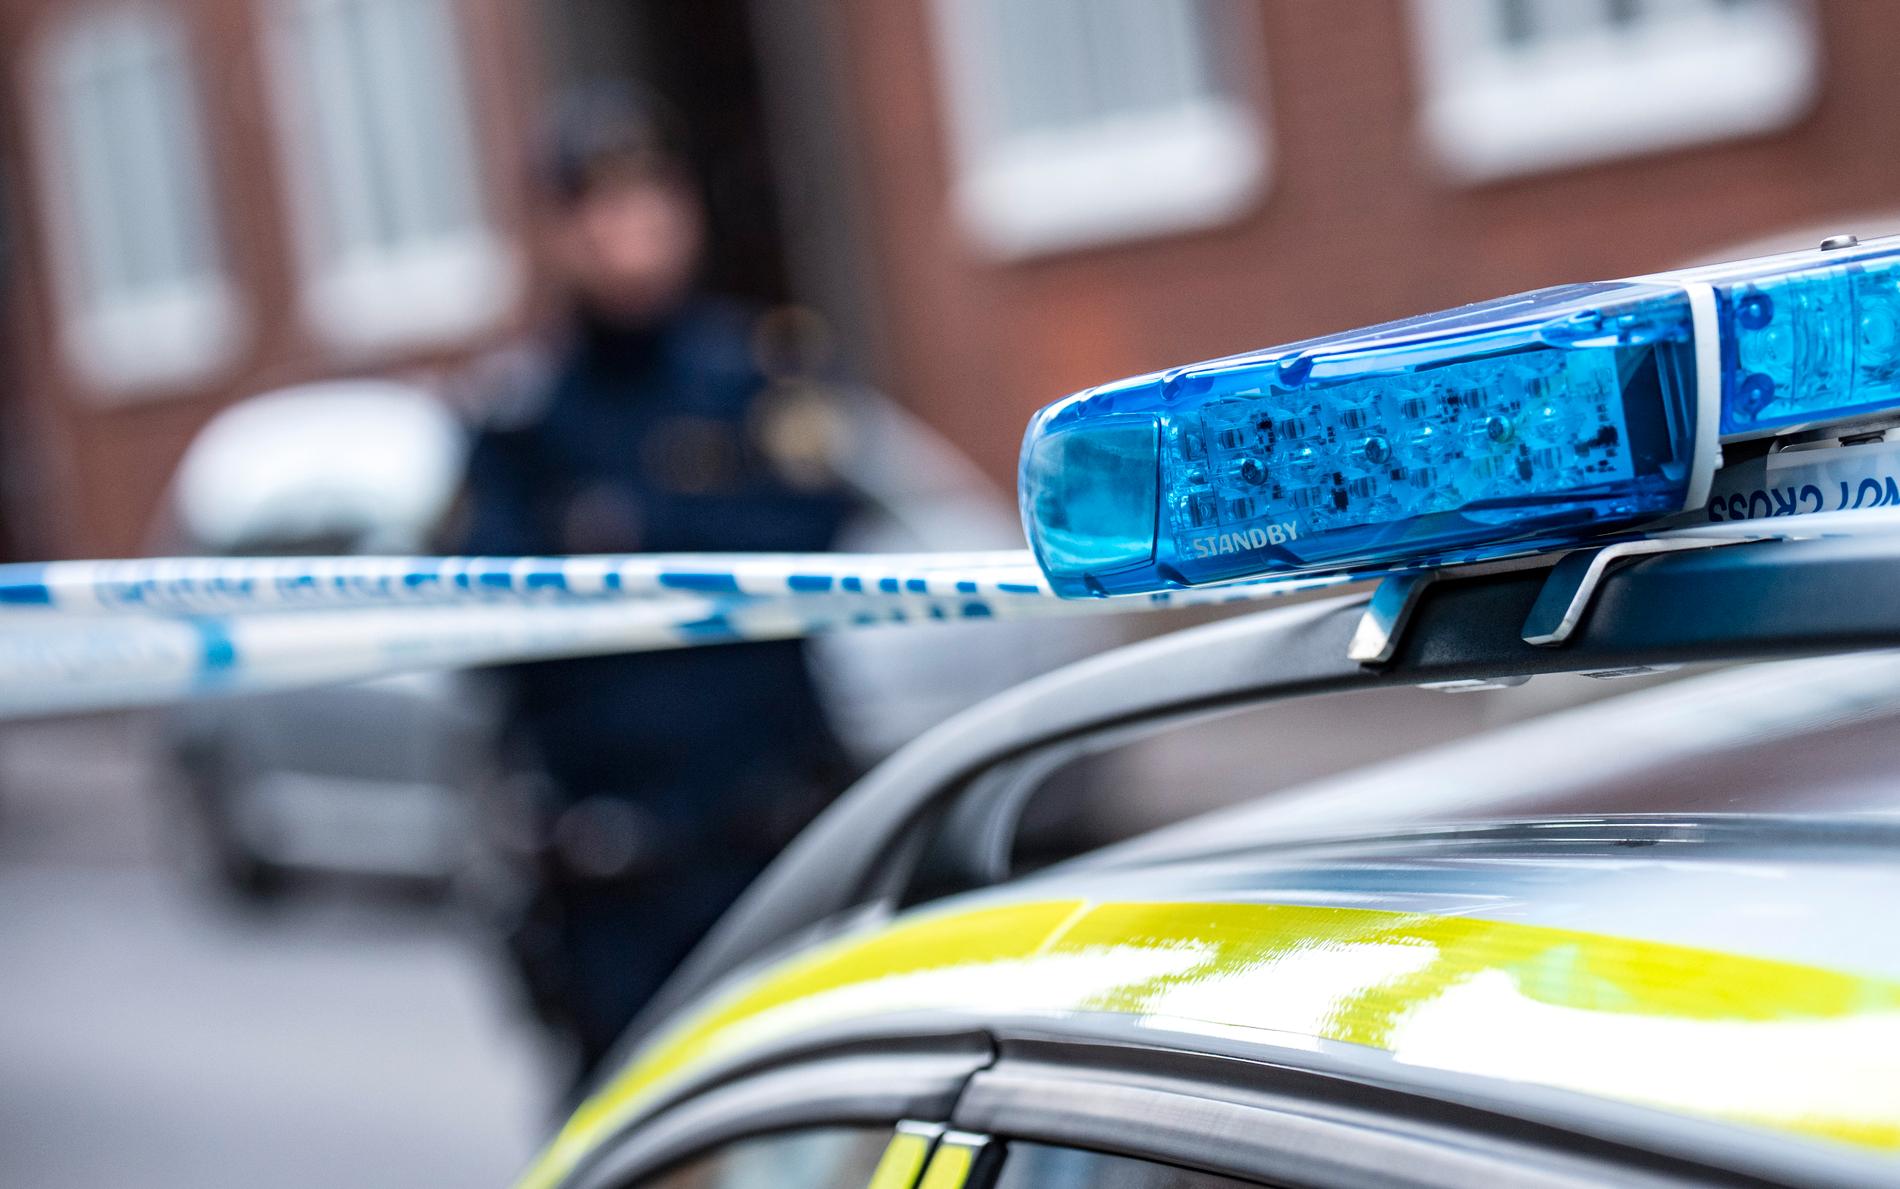 En äldre man i Trelleborg fick under söndagen föras till sjukhus efter att ha blivit sparkad flera gånger i huvudet. En man har nu anhållits, misstänkt för mordförsök. Arkivbild.